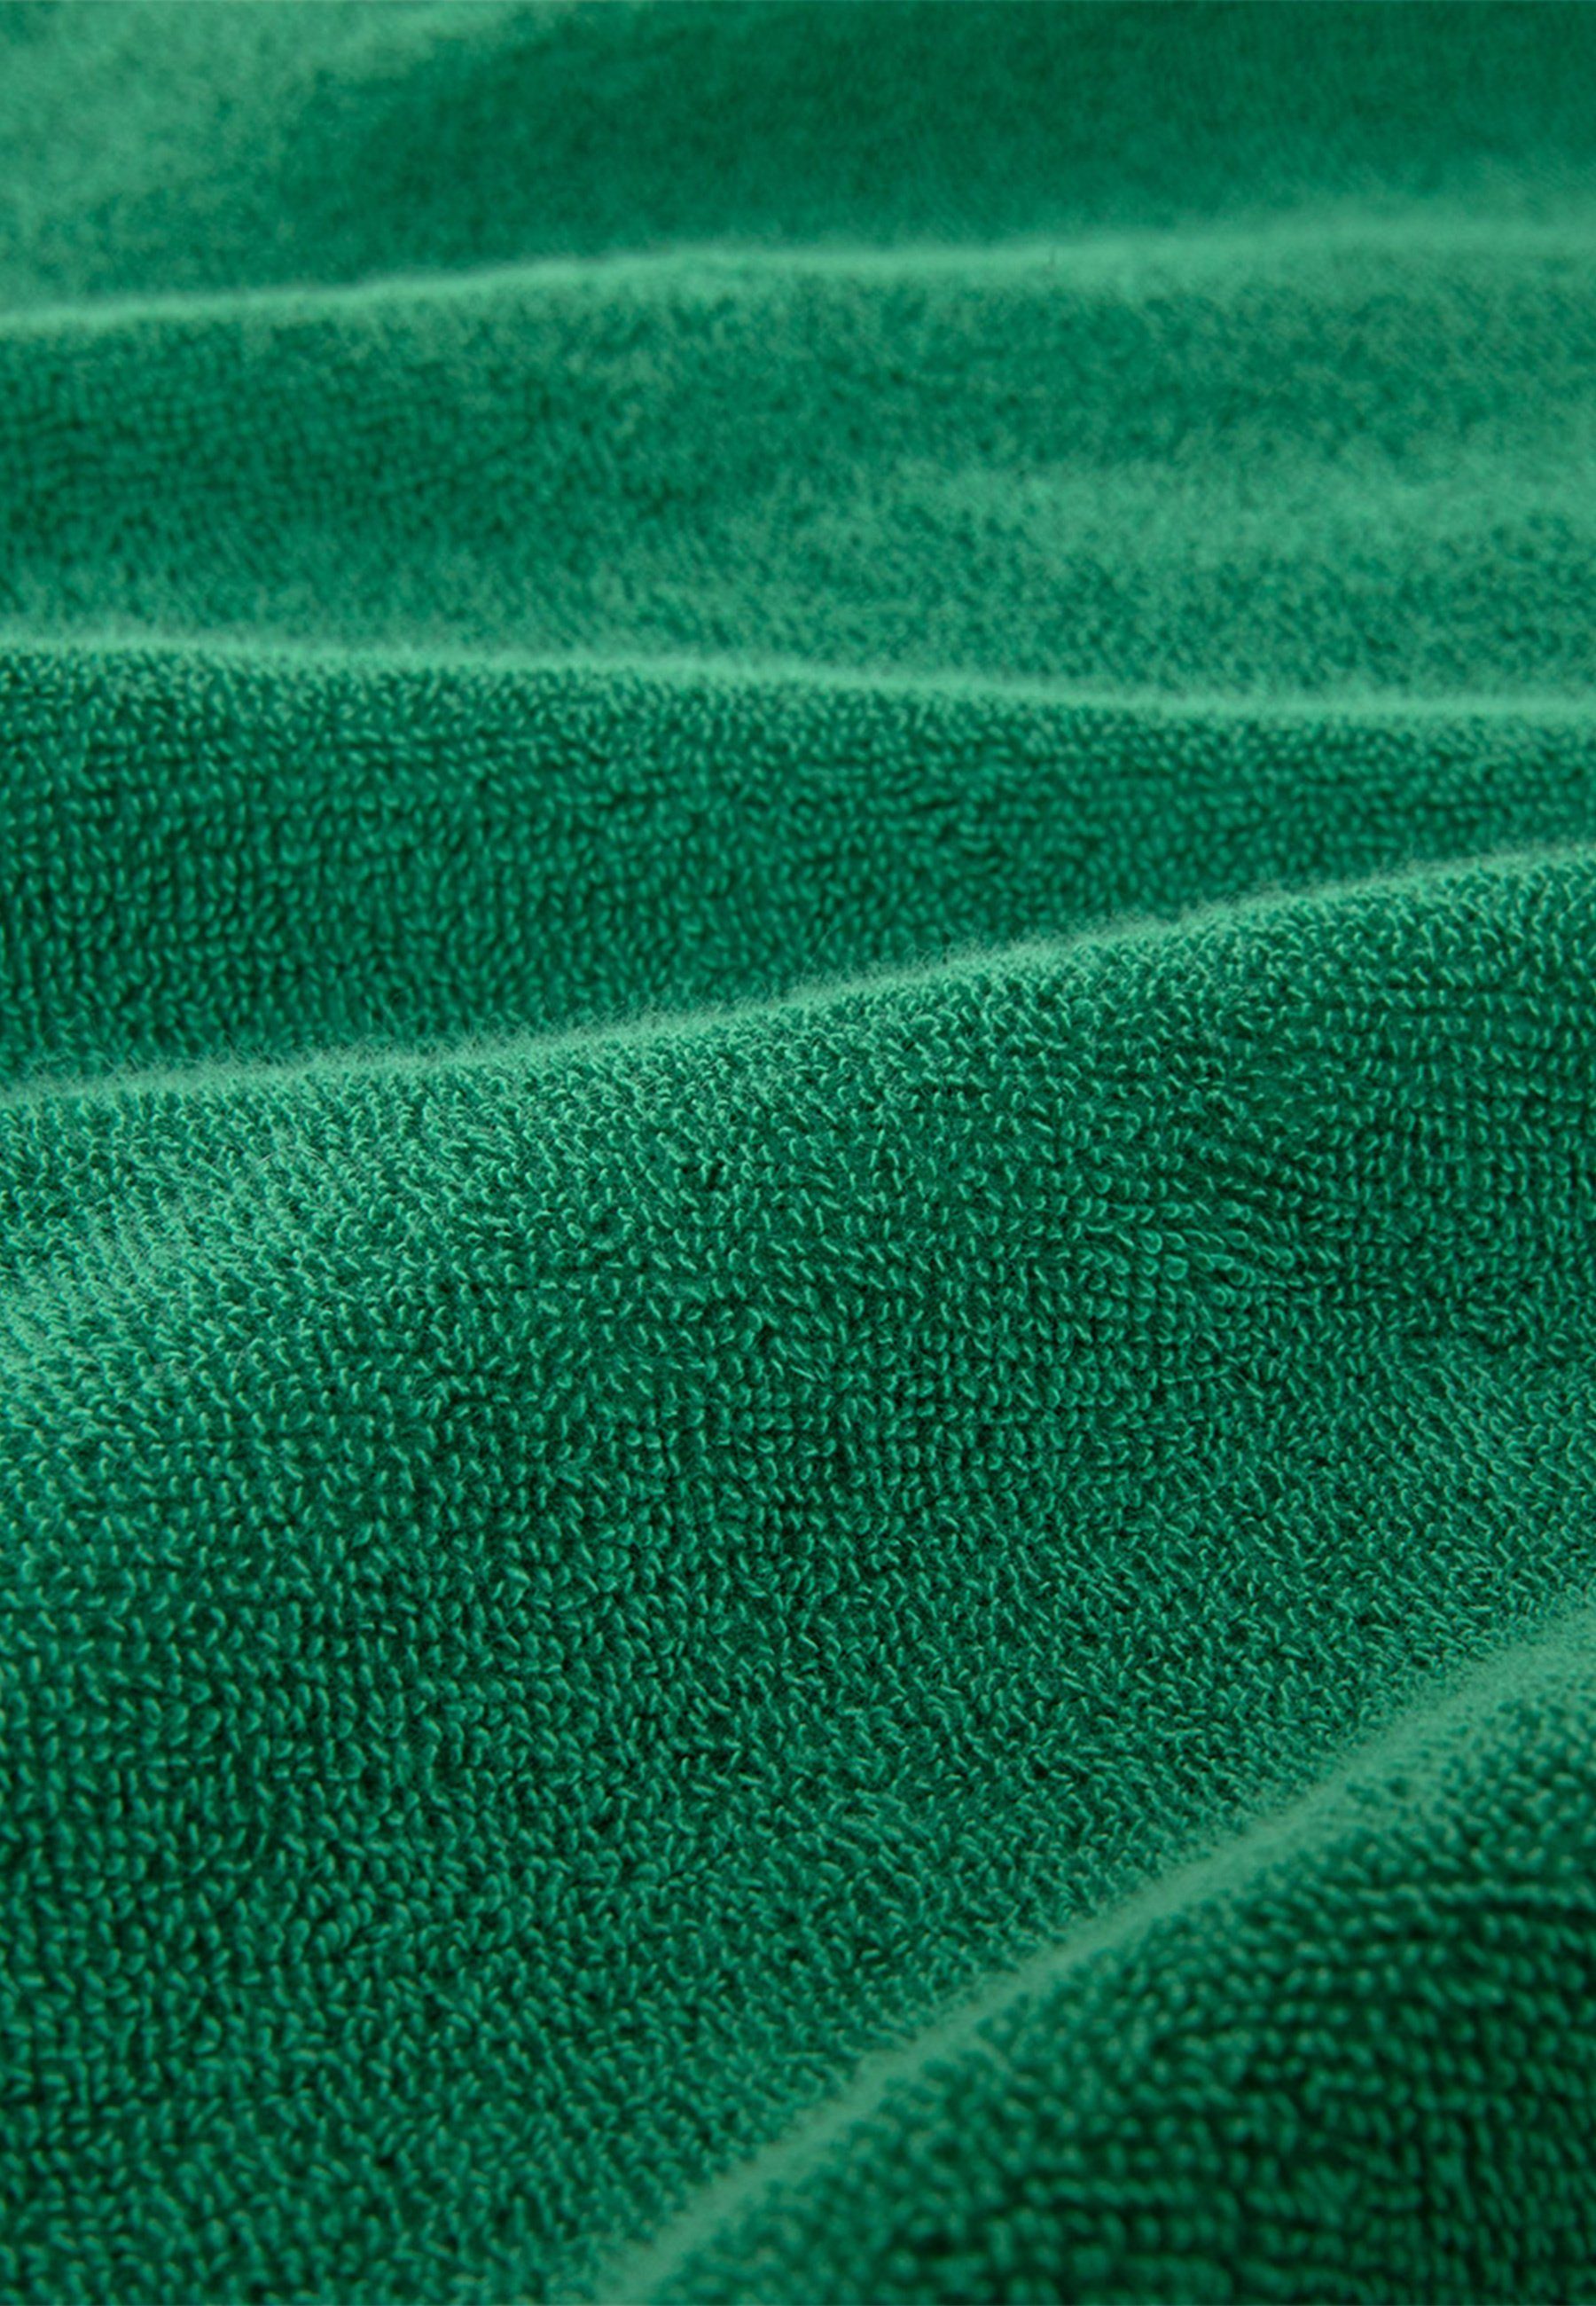 Kz KENZO Handtuch, Label-Applikationen Handtücher mit green MAISON Iconic